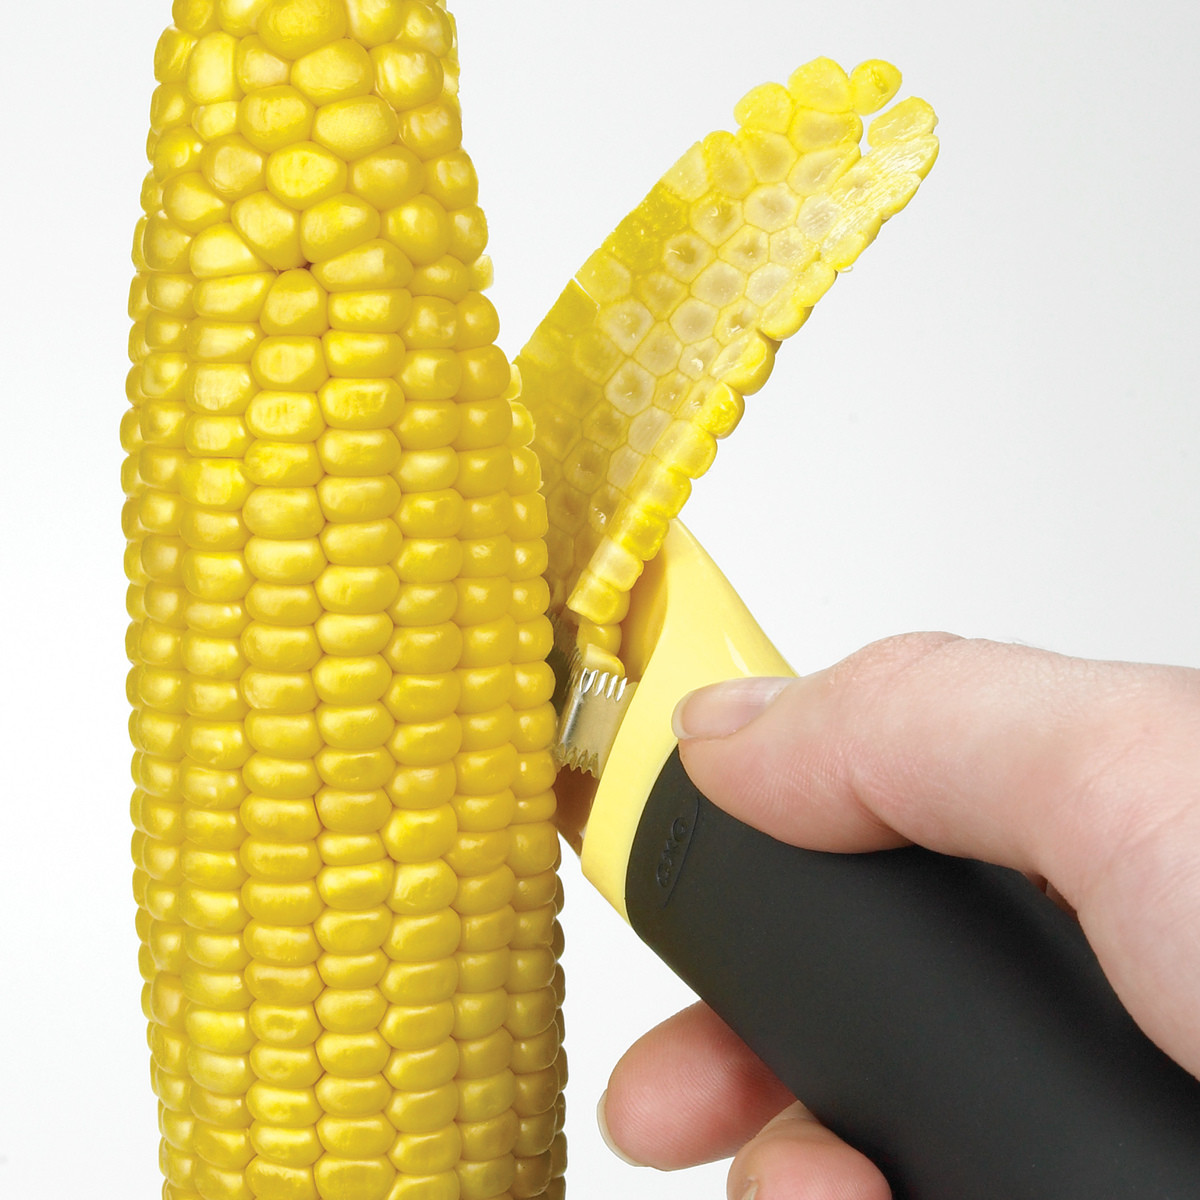 corn peeler